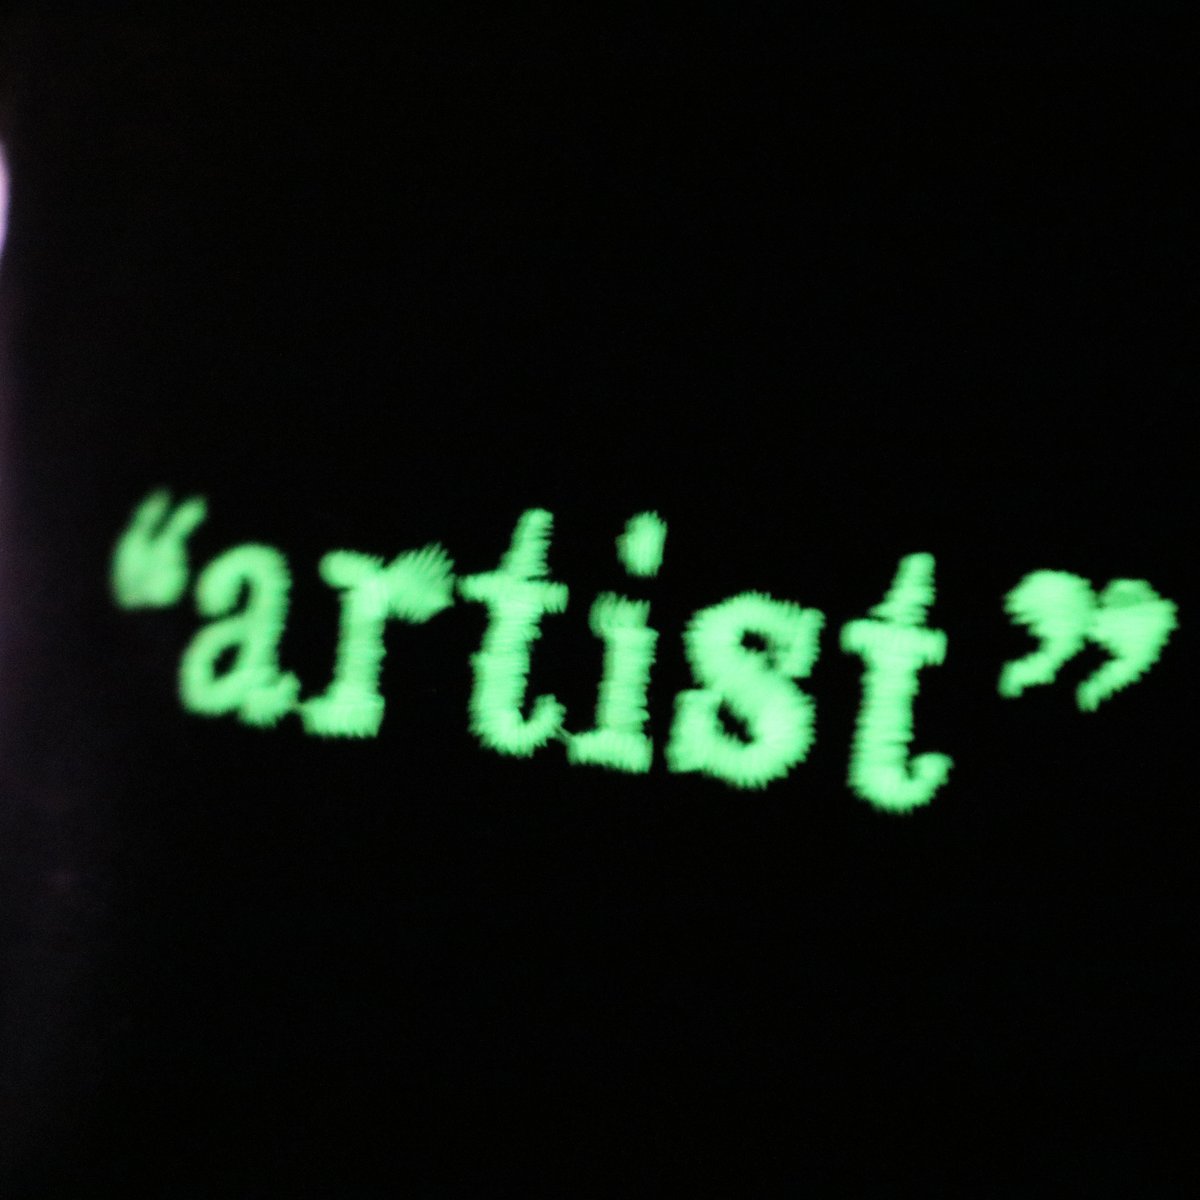 Image of "artist" - GLOW IN THE DARK CAP